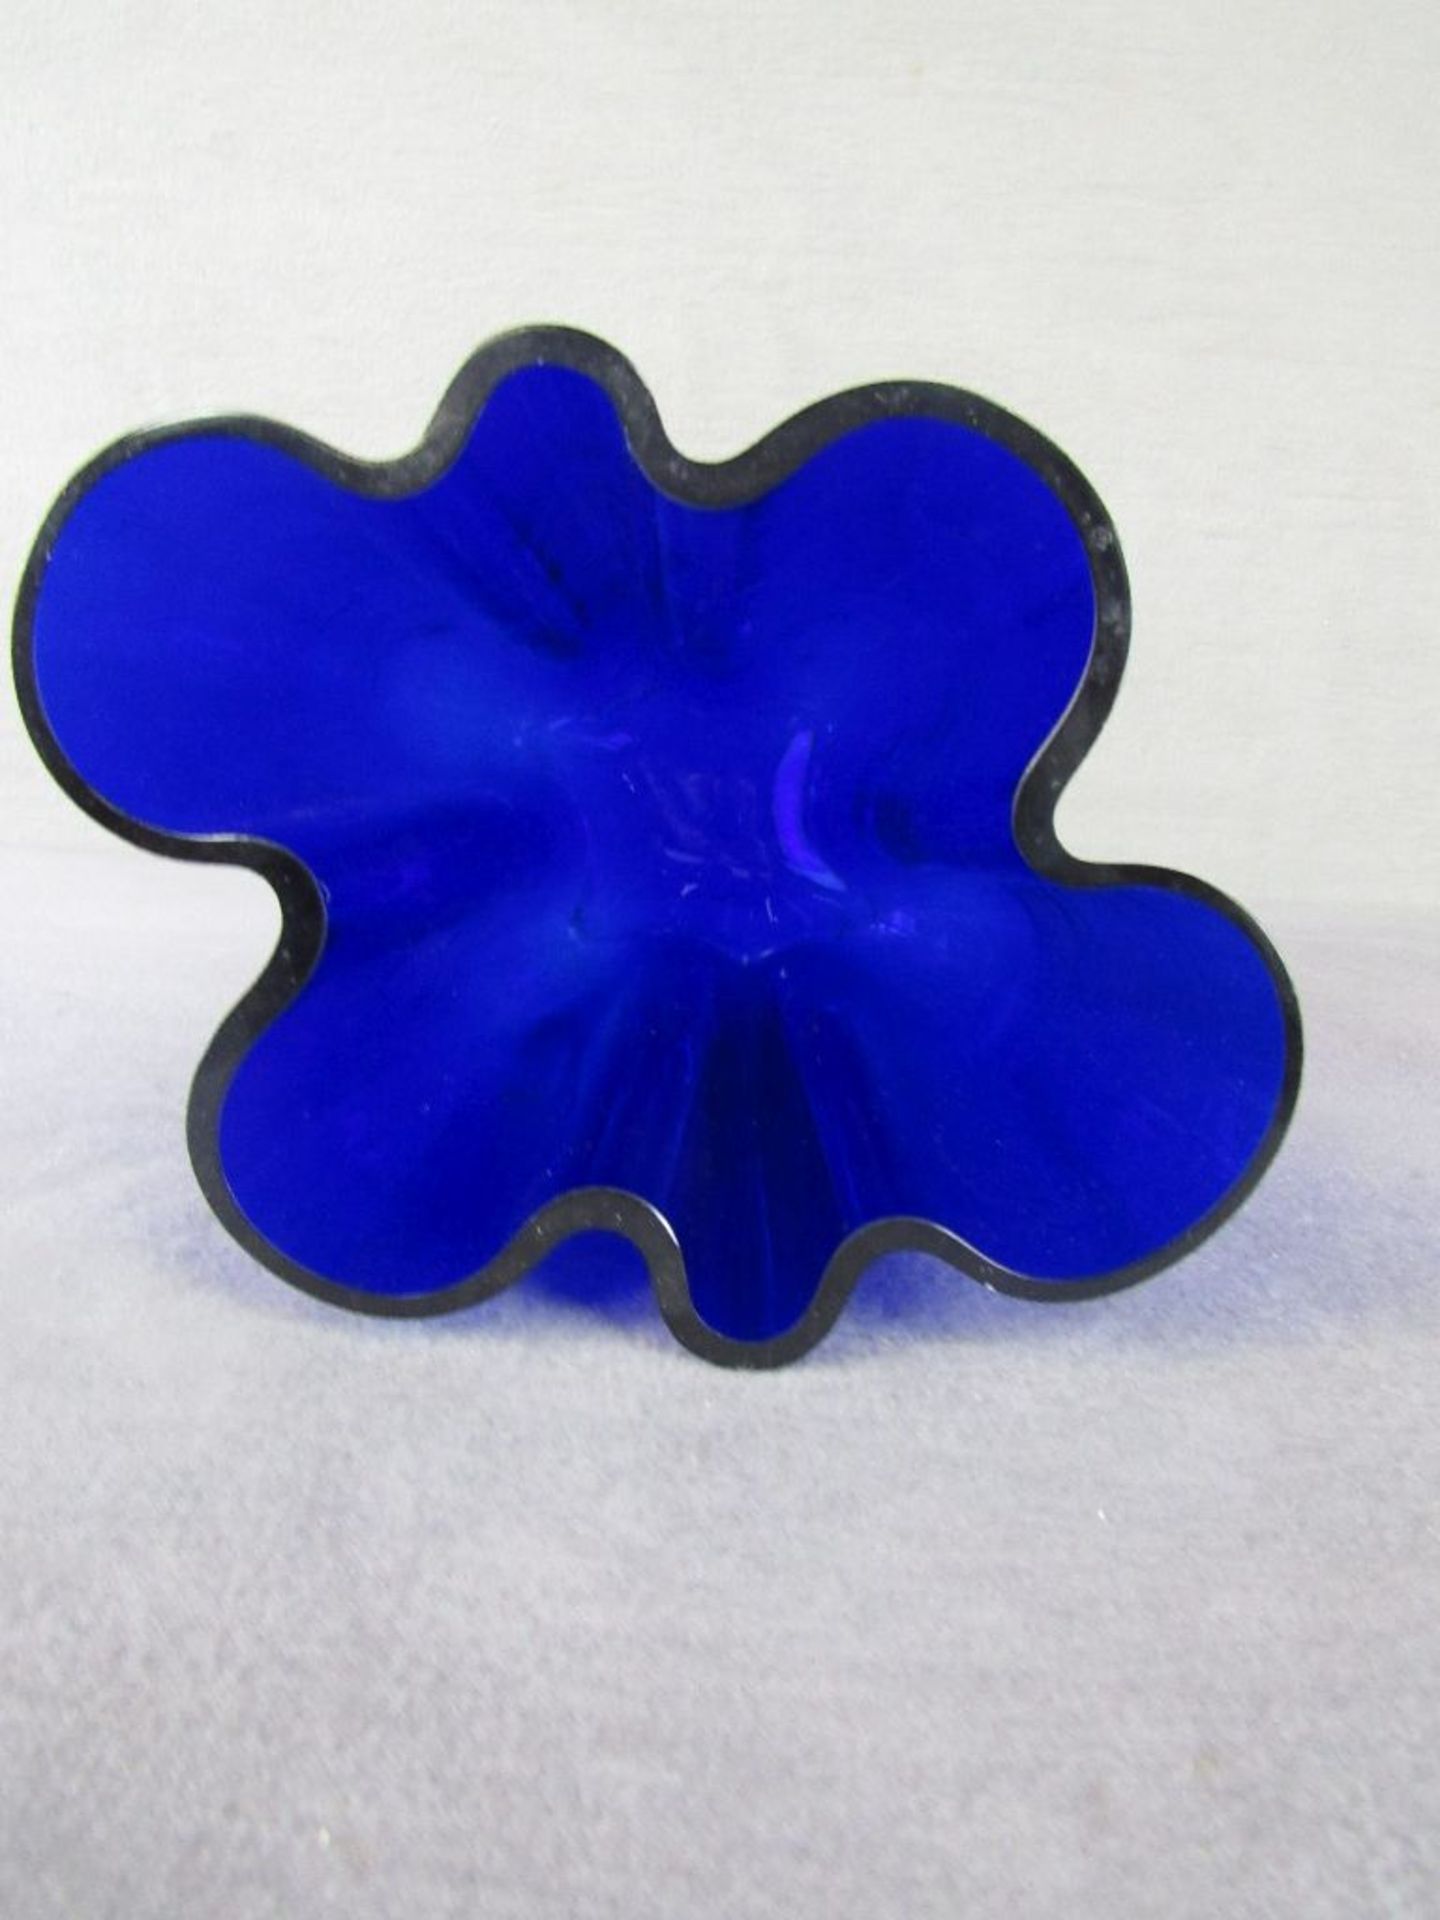 Designerglasvase Taschentuchform blau 24cm hoch - Bild 2 aus 3